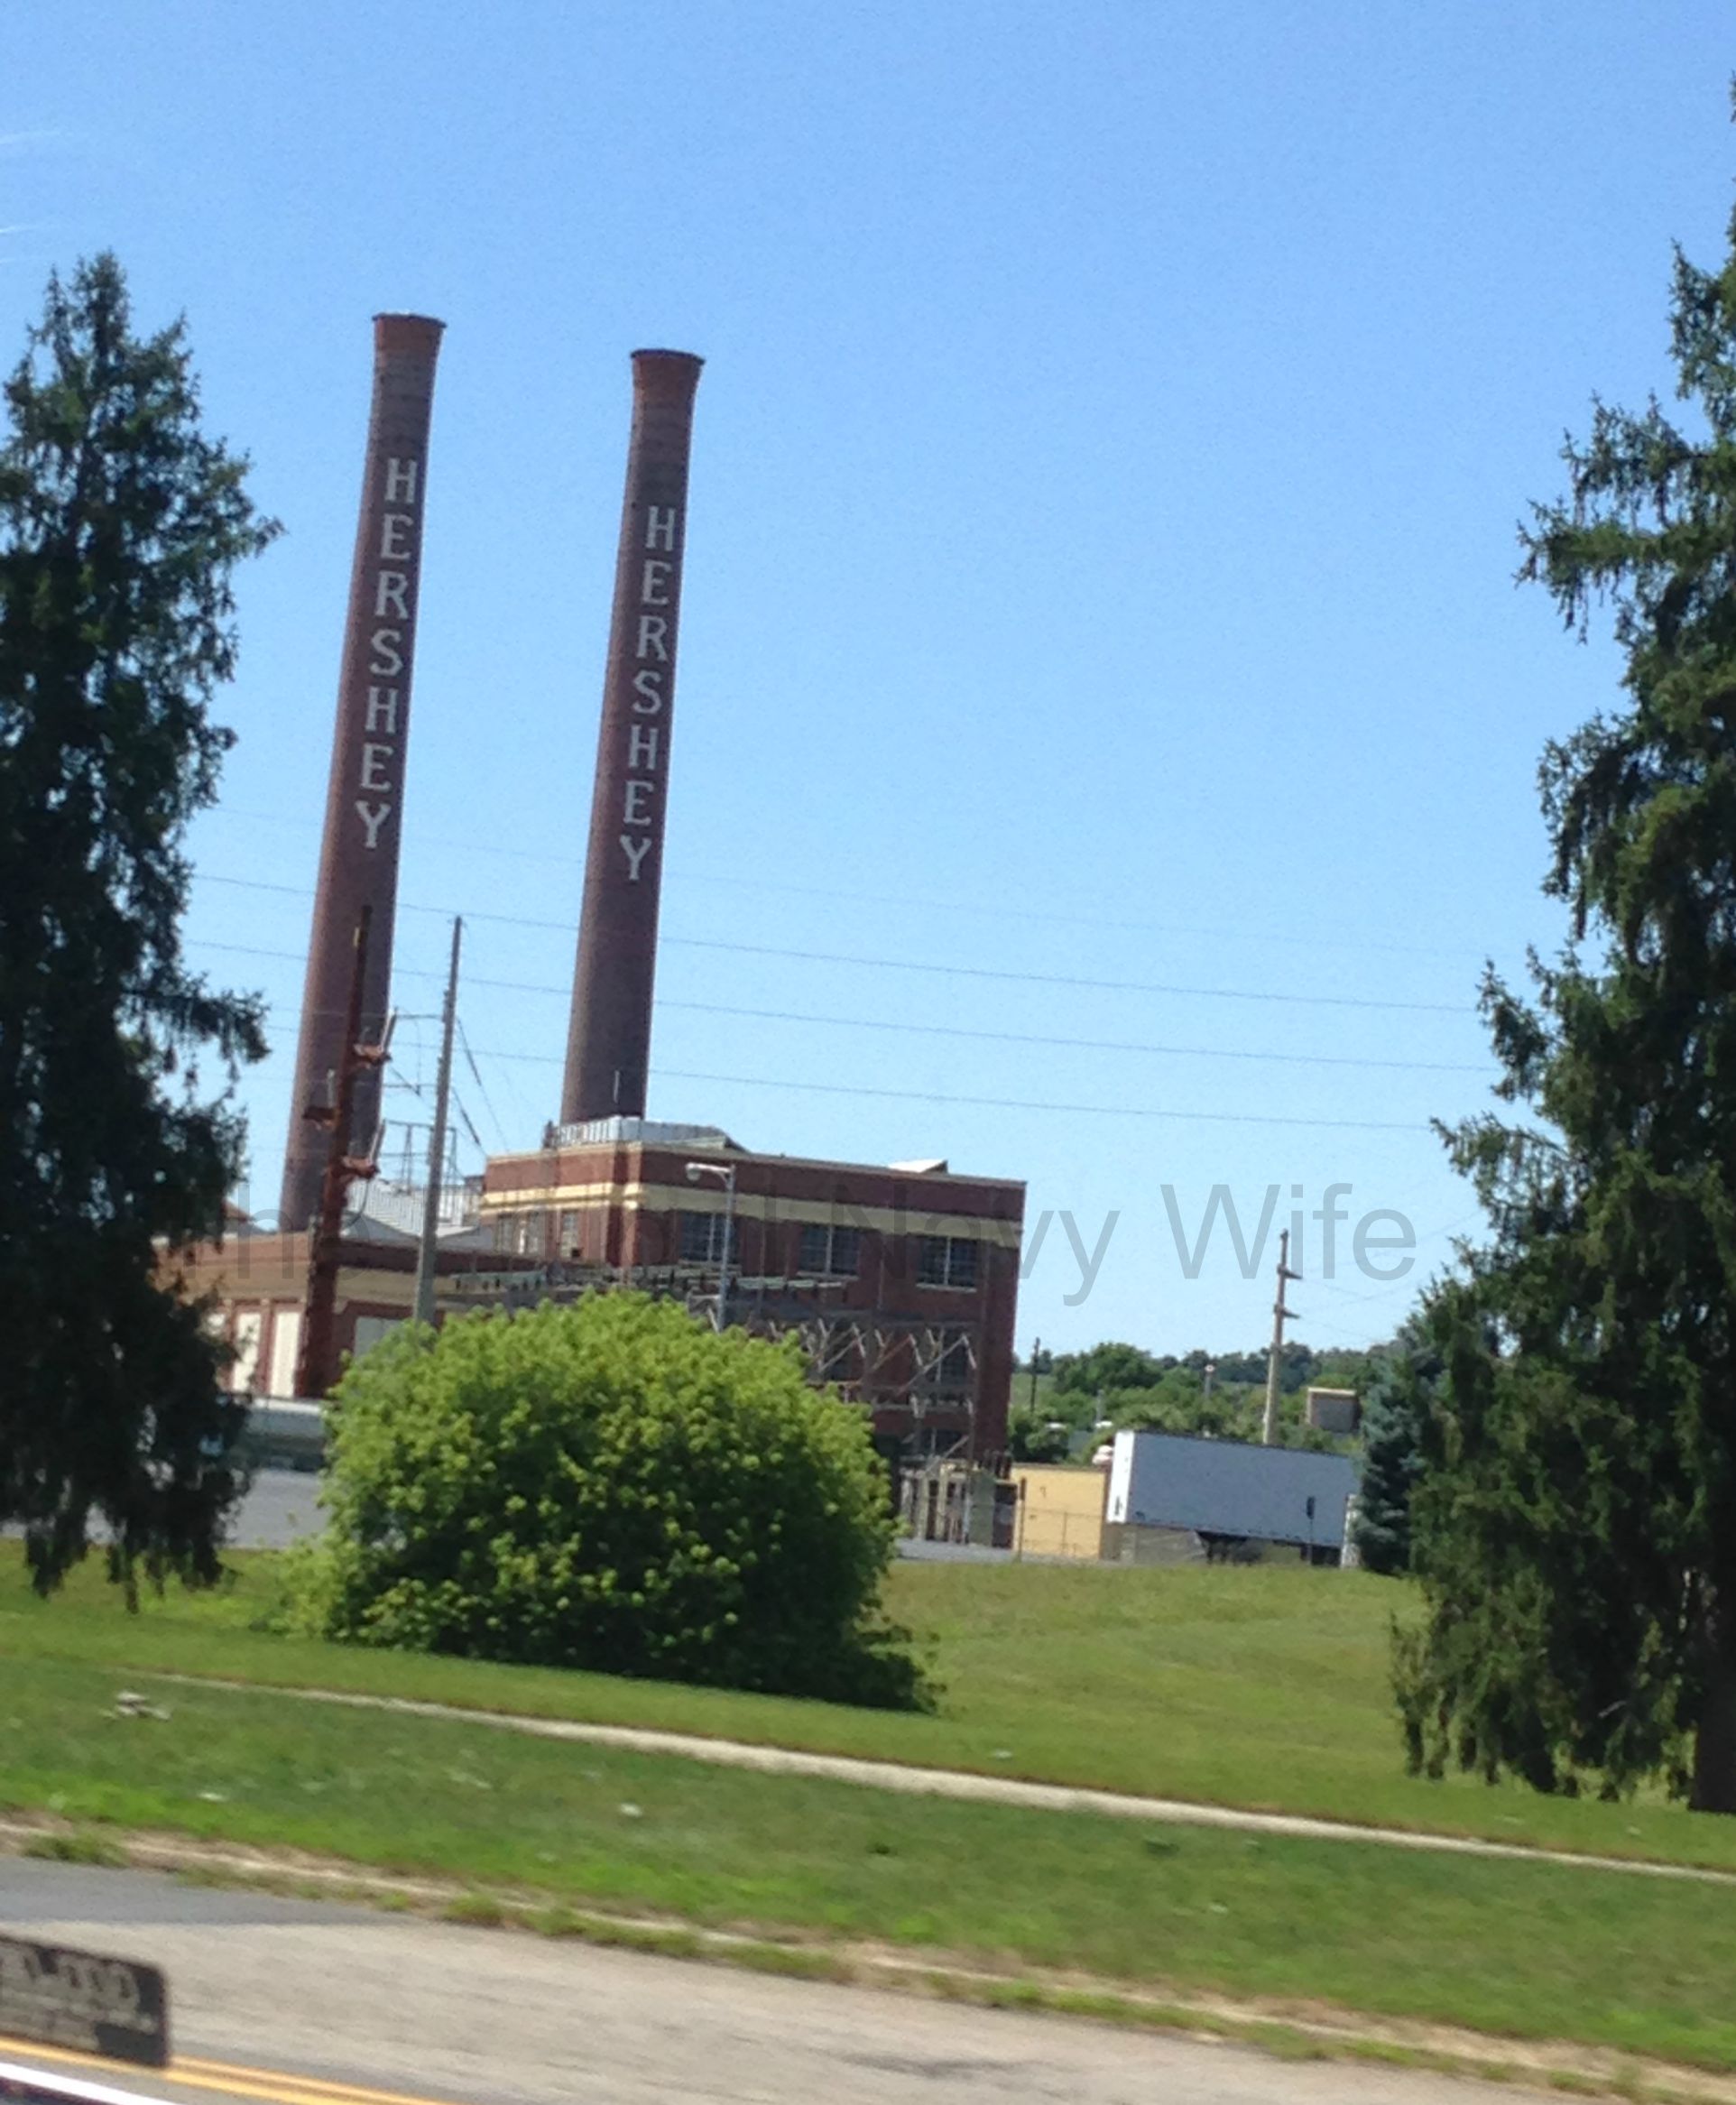 Hershey’s Chocolate World – Hershey, Pennsylvania Chocolate Factory